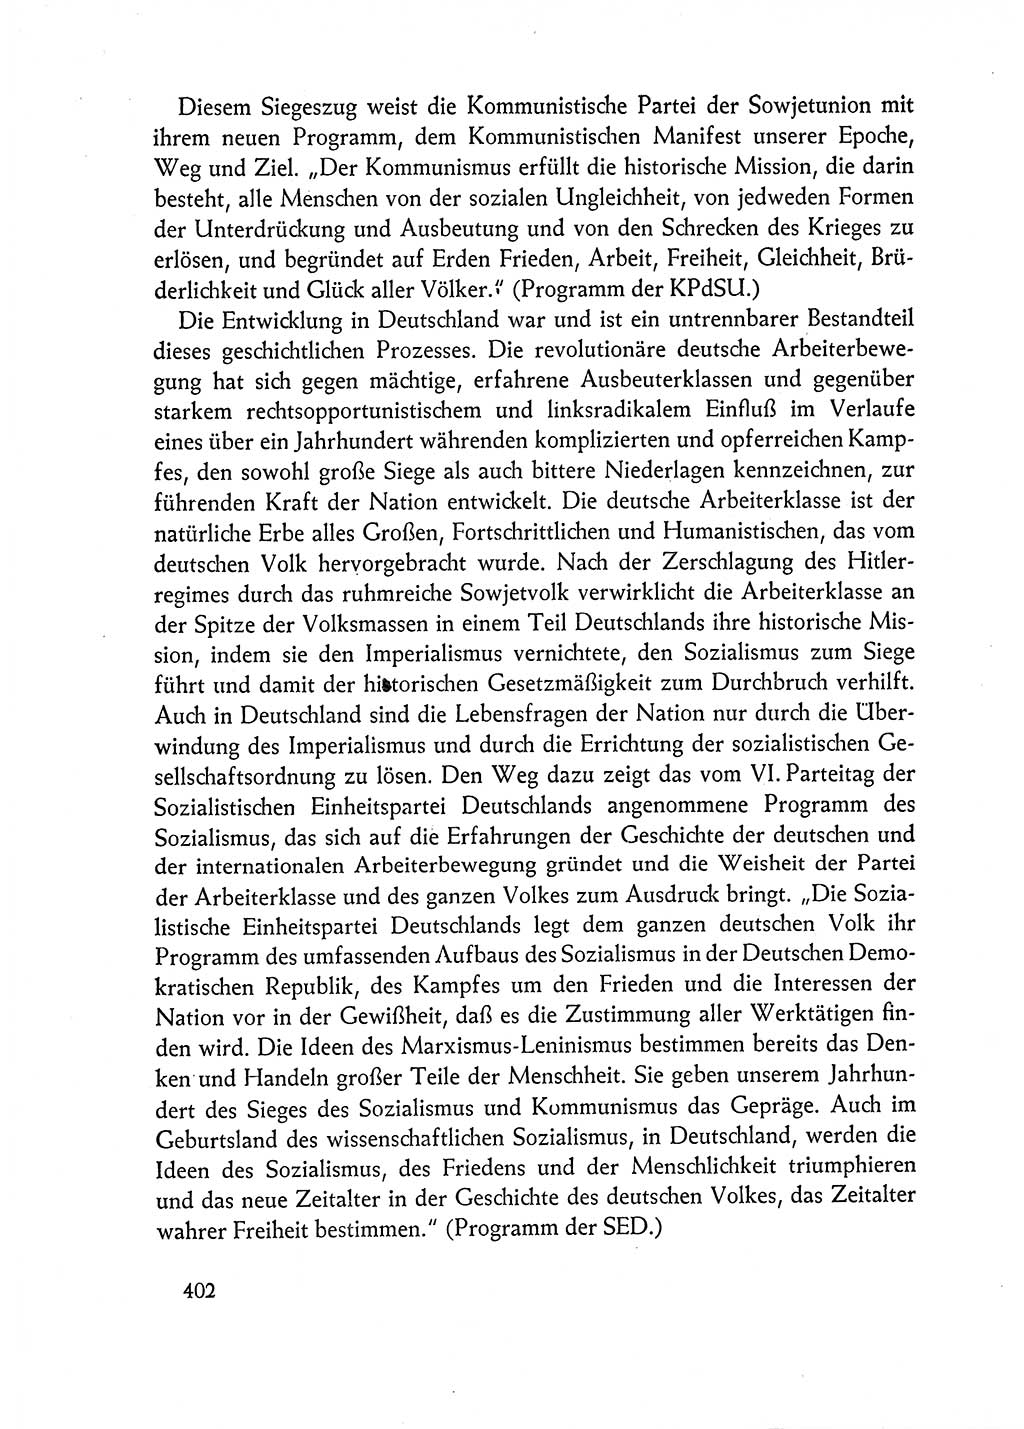 Dokumente der Sozialistischen Einheitspartei Deutschlands (SED) [Deutsche Demokratische Republik (DDR)] 1962-1963, Seite 402 (Dok. SED DDR 1962-1963, S. 402)